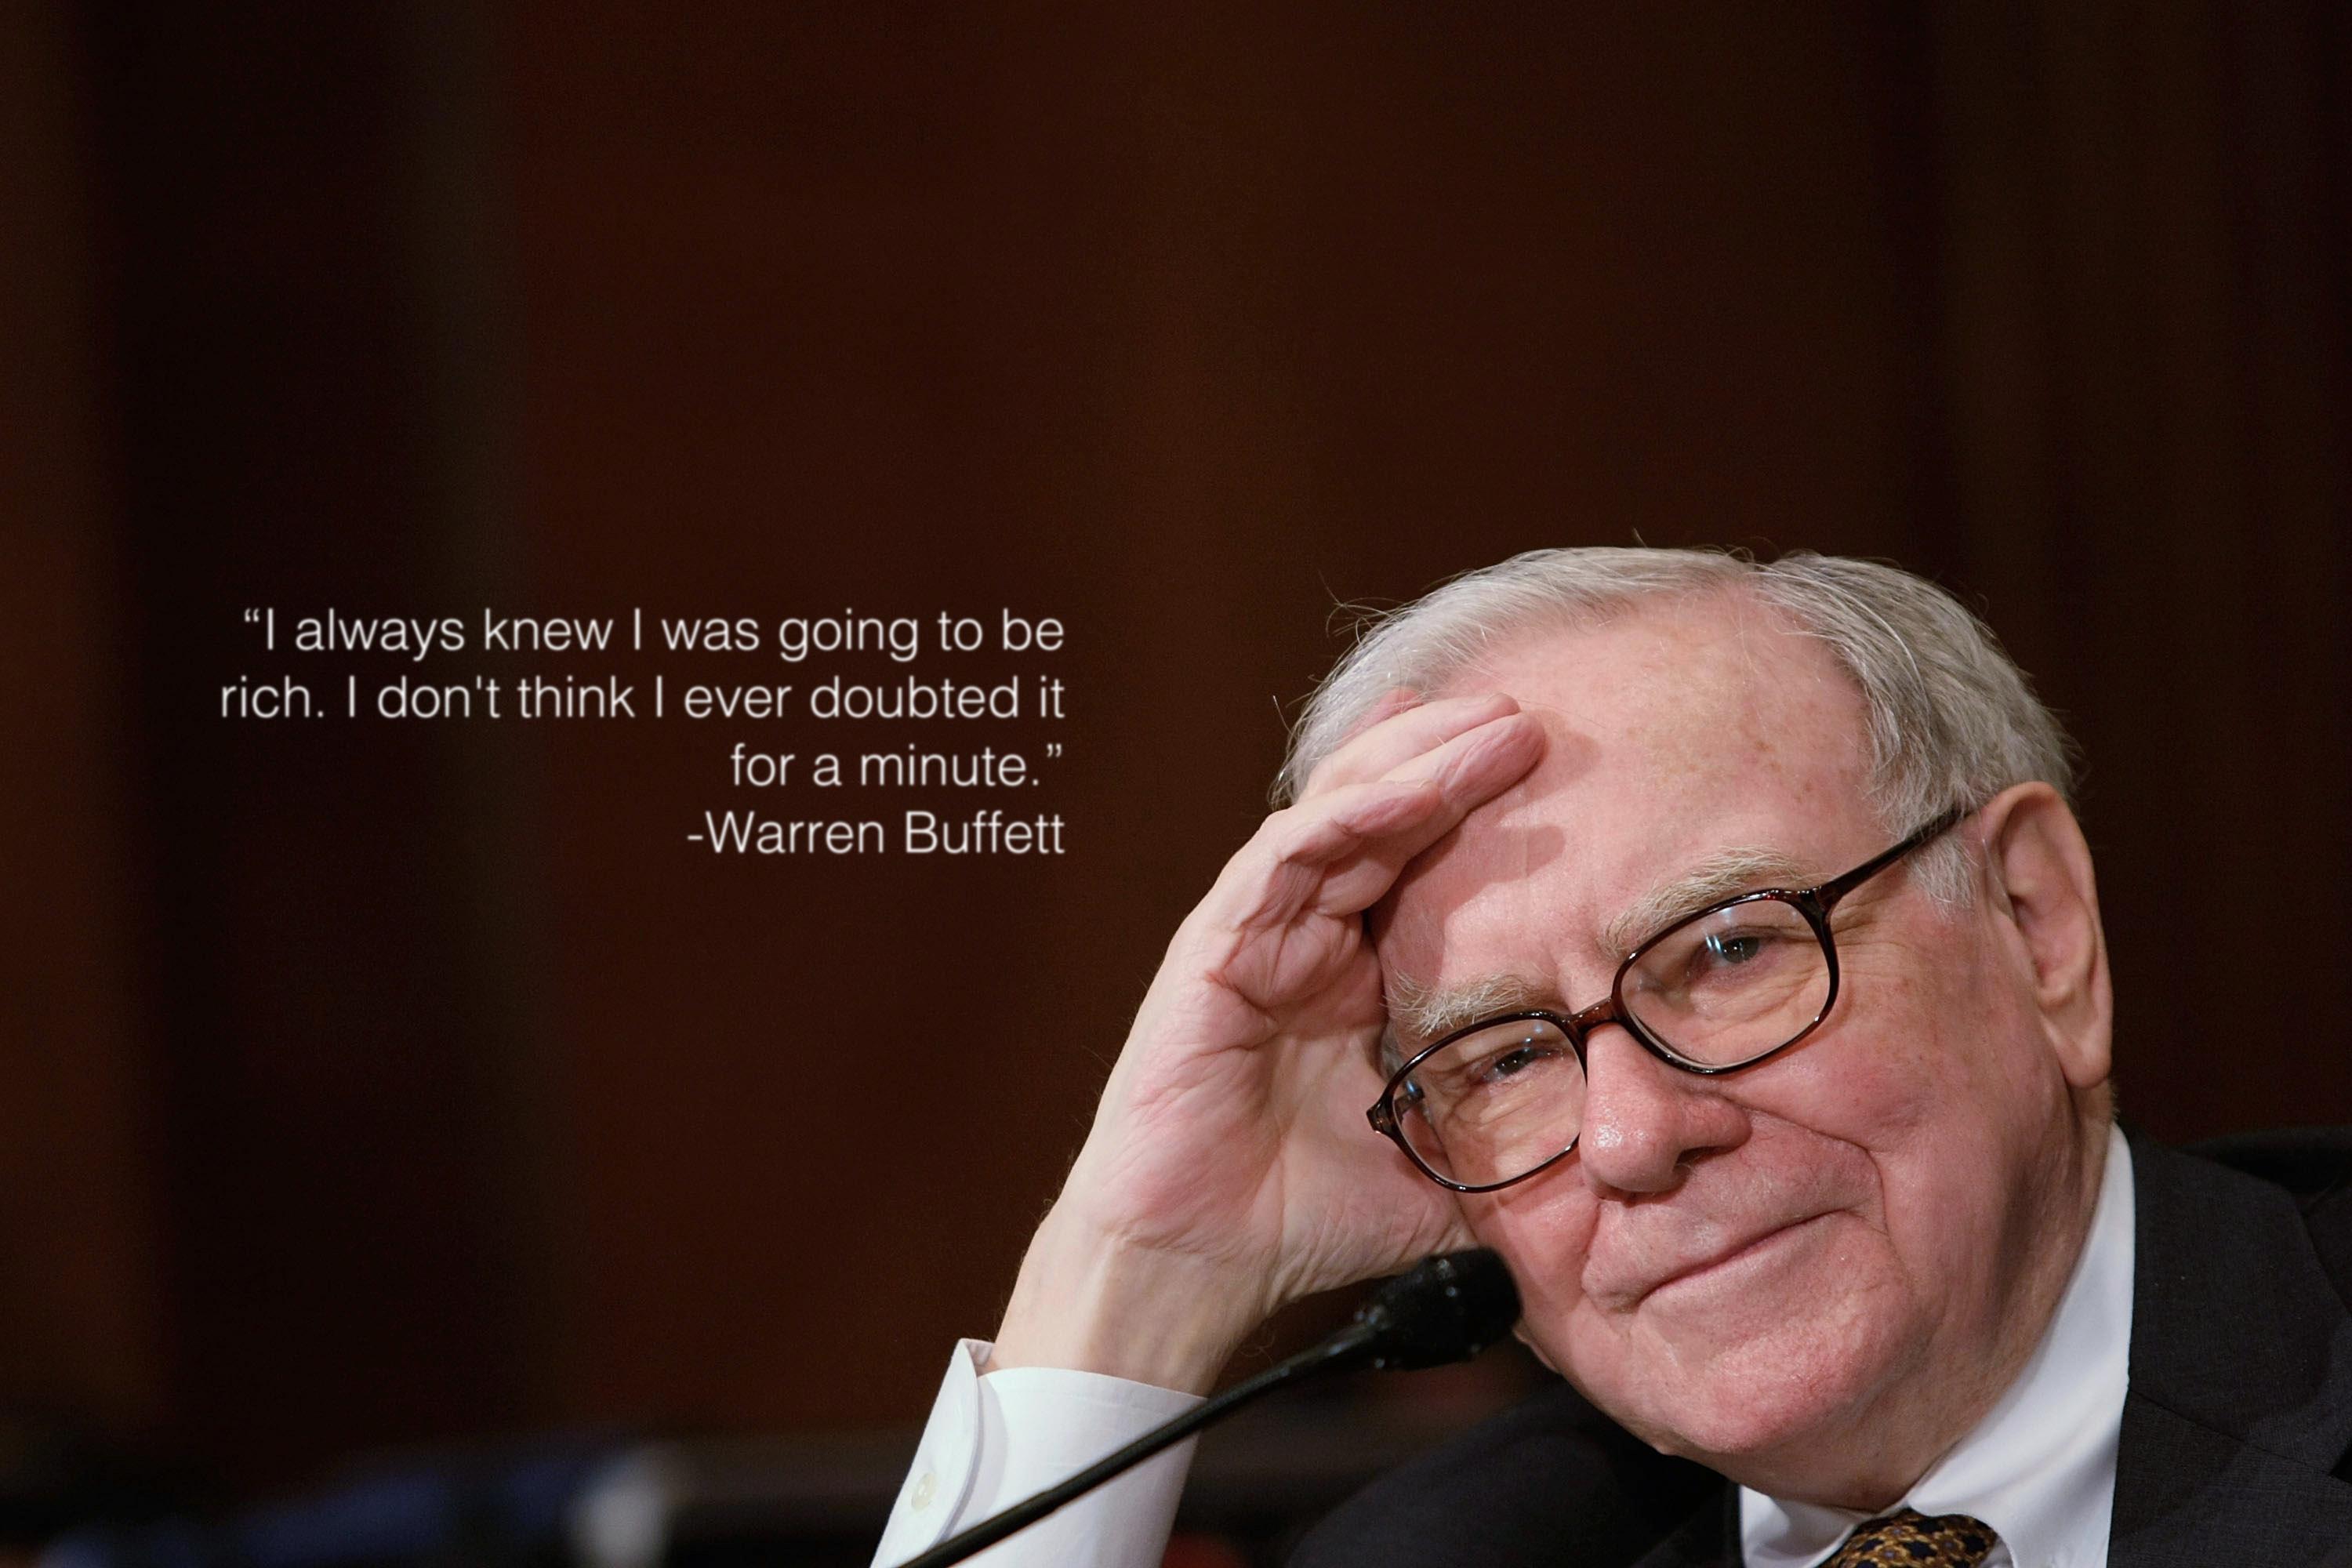 Warren Buffett Quotes Wallpapers - Wallpaper Cave